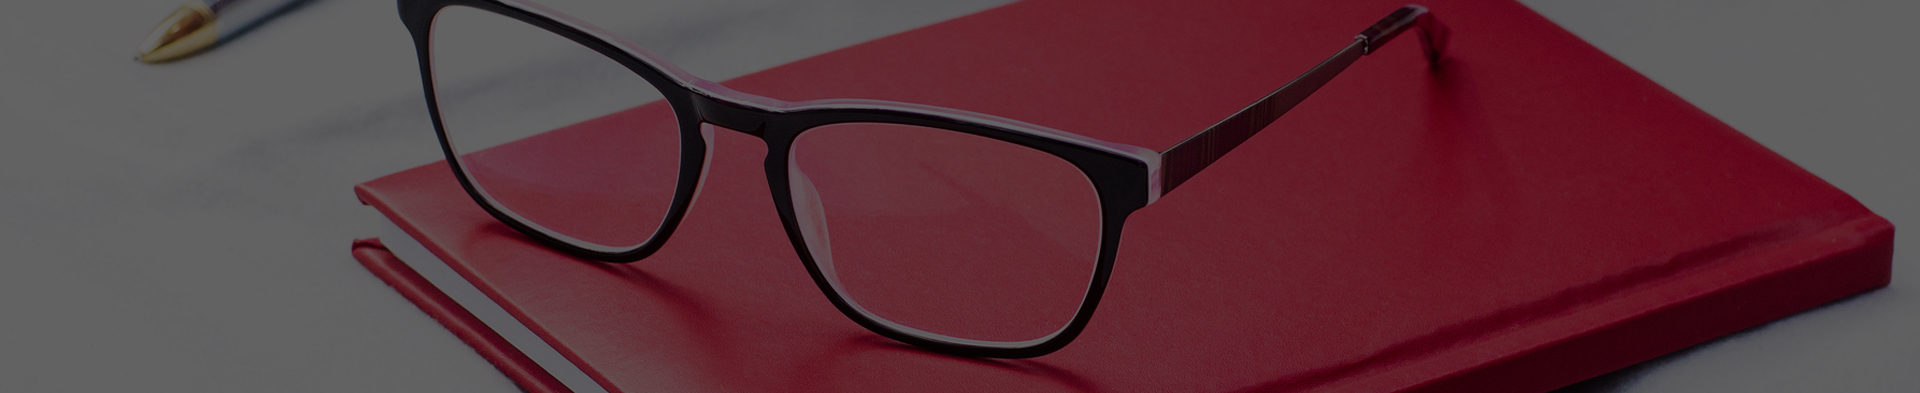 Nákup brýlí v e-shopu OptikDoDomu je hračka